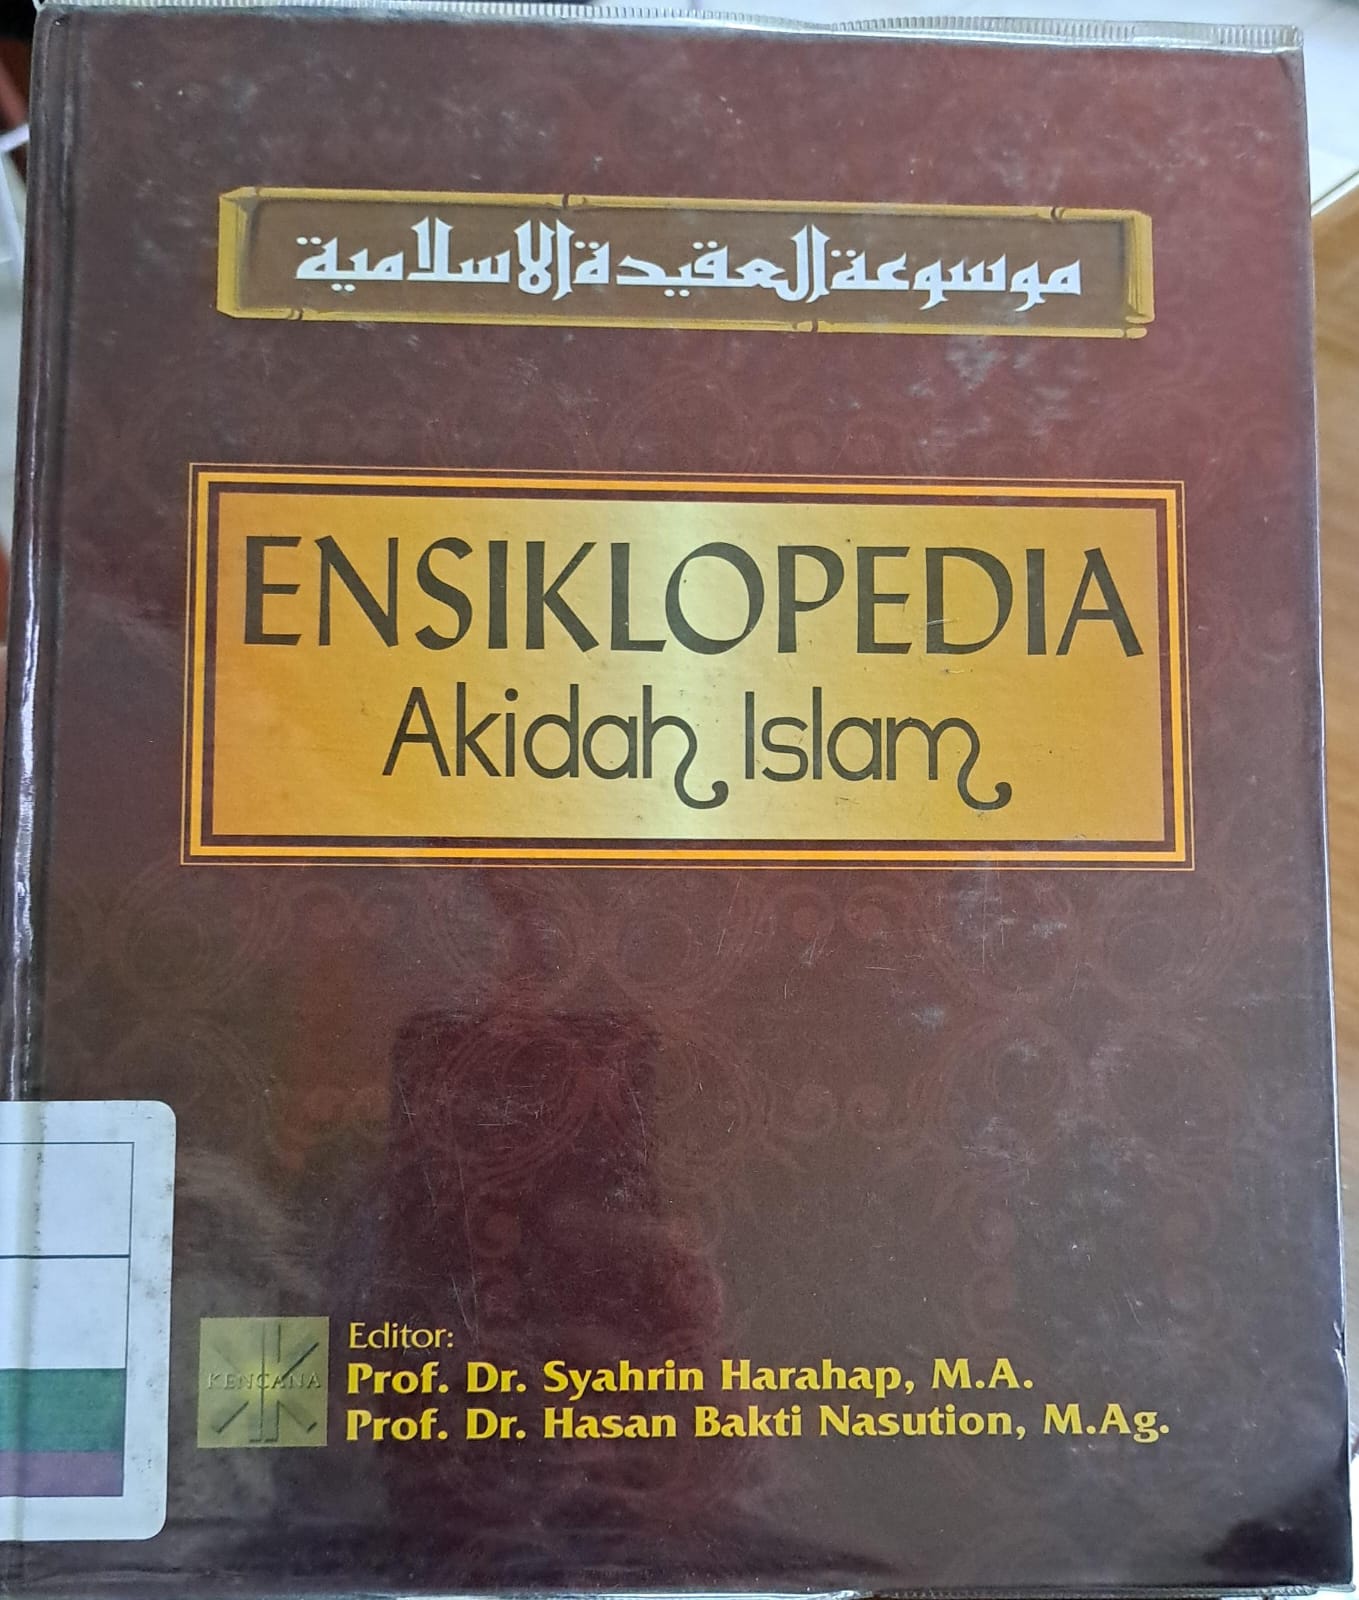 Ensiklopedia akidah islam